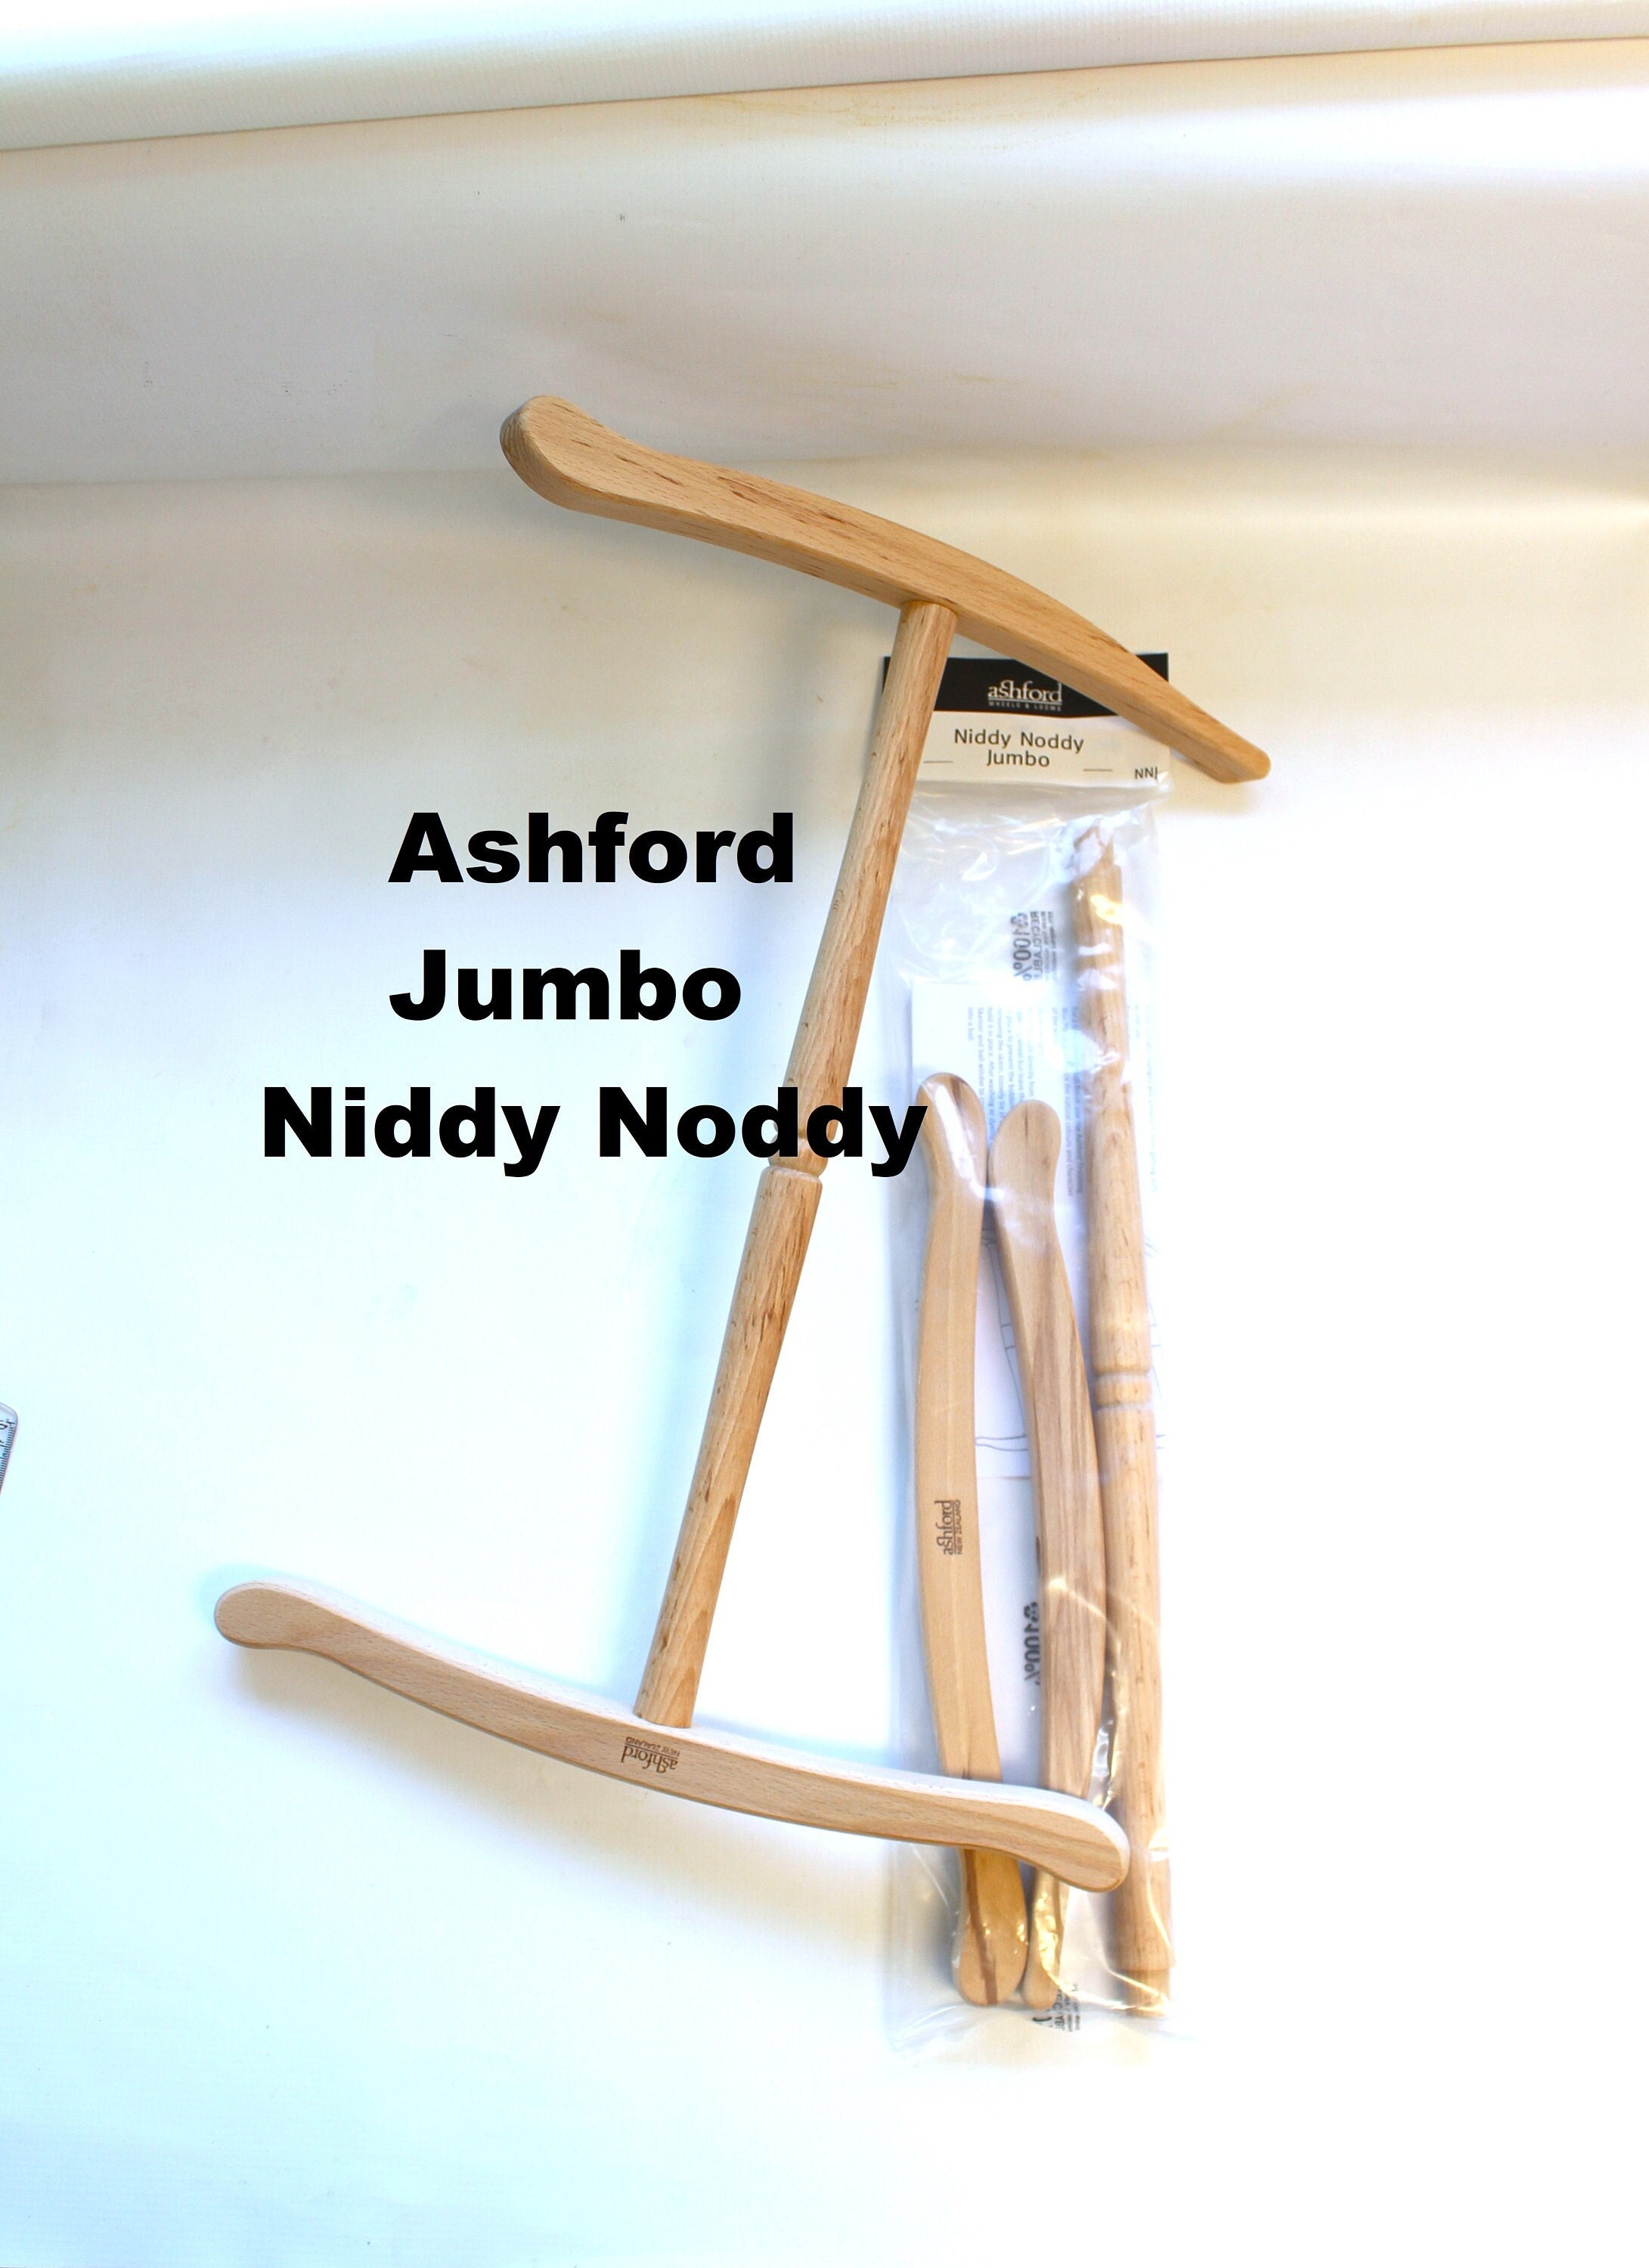 Ashford Jumbo Niddy Noddy to Skein Spun Yarn Large Wood 